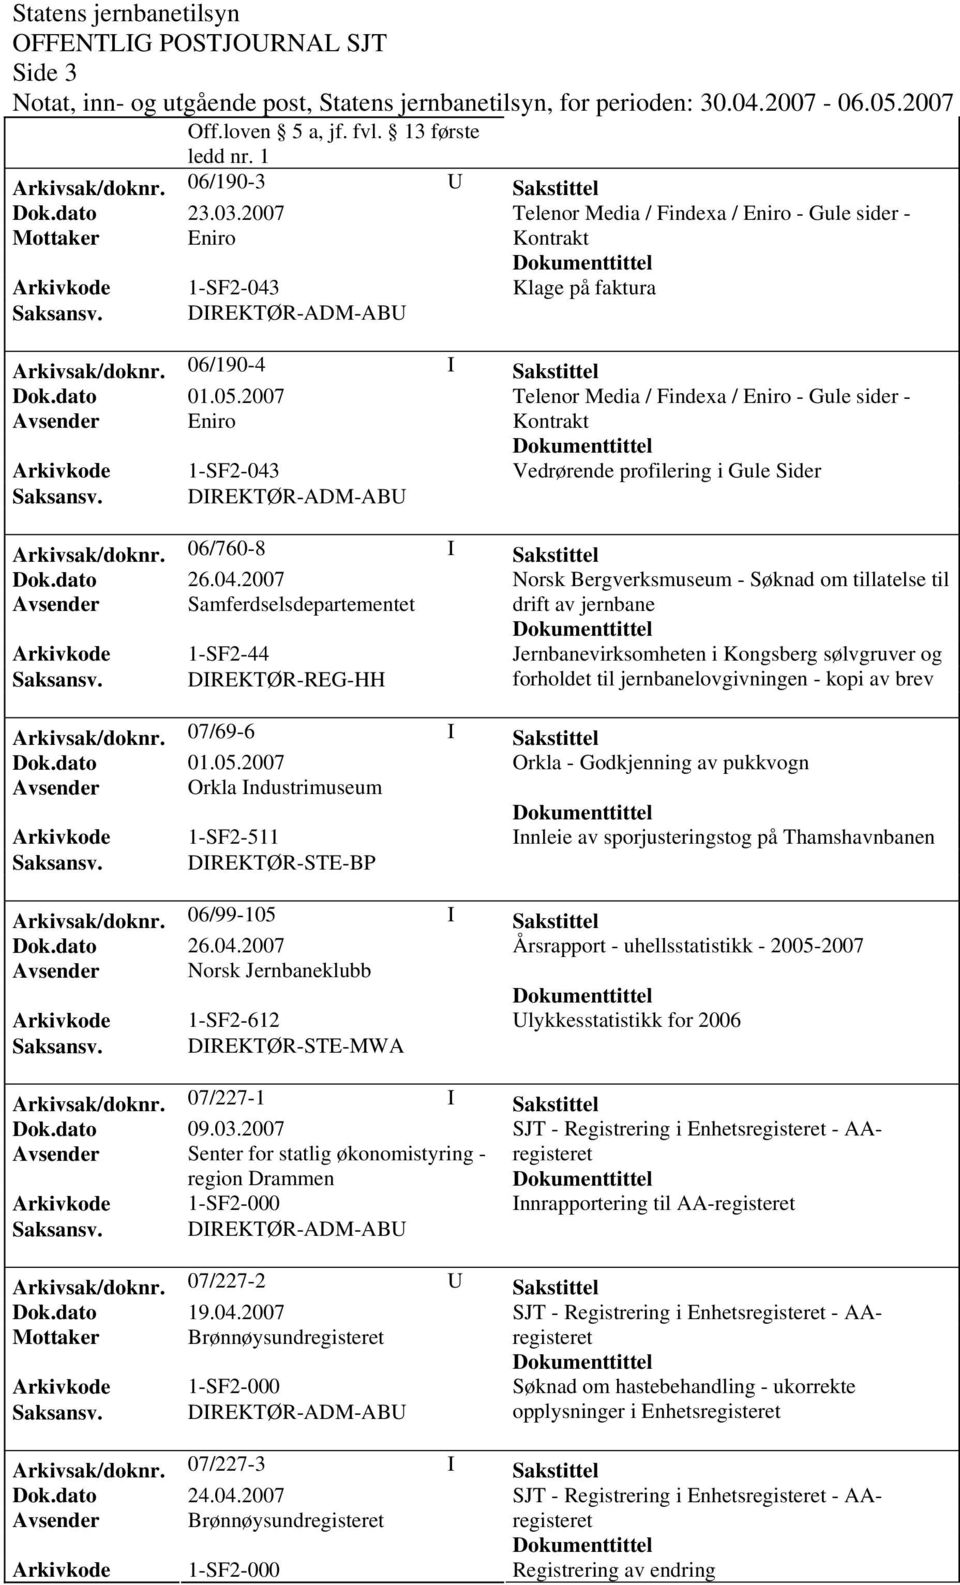 2007 Telenor Media / Findexa / Eniro - Gule sider - Avsender Eniro Kontrakt Arkivkode 1-SF2-043 Vedrørende profilering i Gule Sider Saksansv. DIREKTØR-ADM-ABU Arkivsak/doknr.